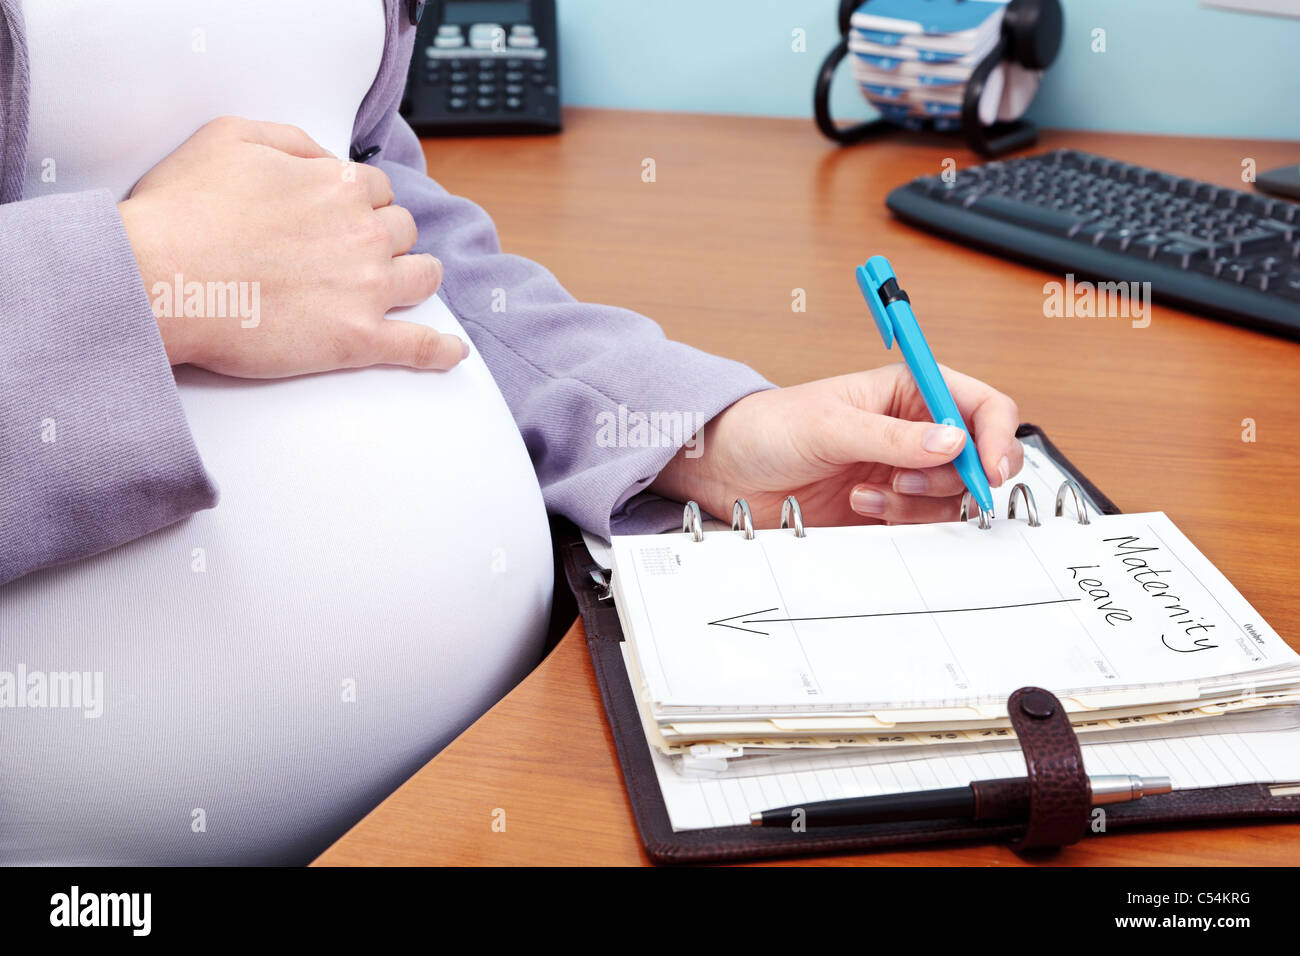 Foto de una mujer embarazada en una oficina por escrito las palabras de Maternidad en su diario. Foto de stock